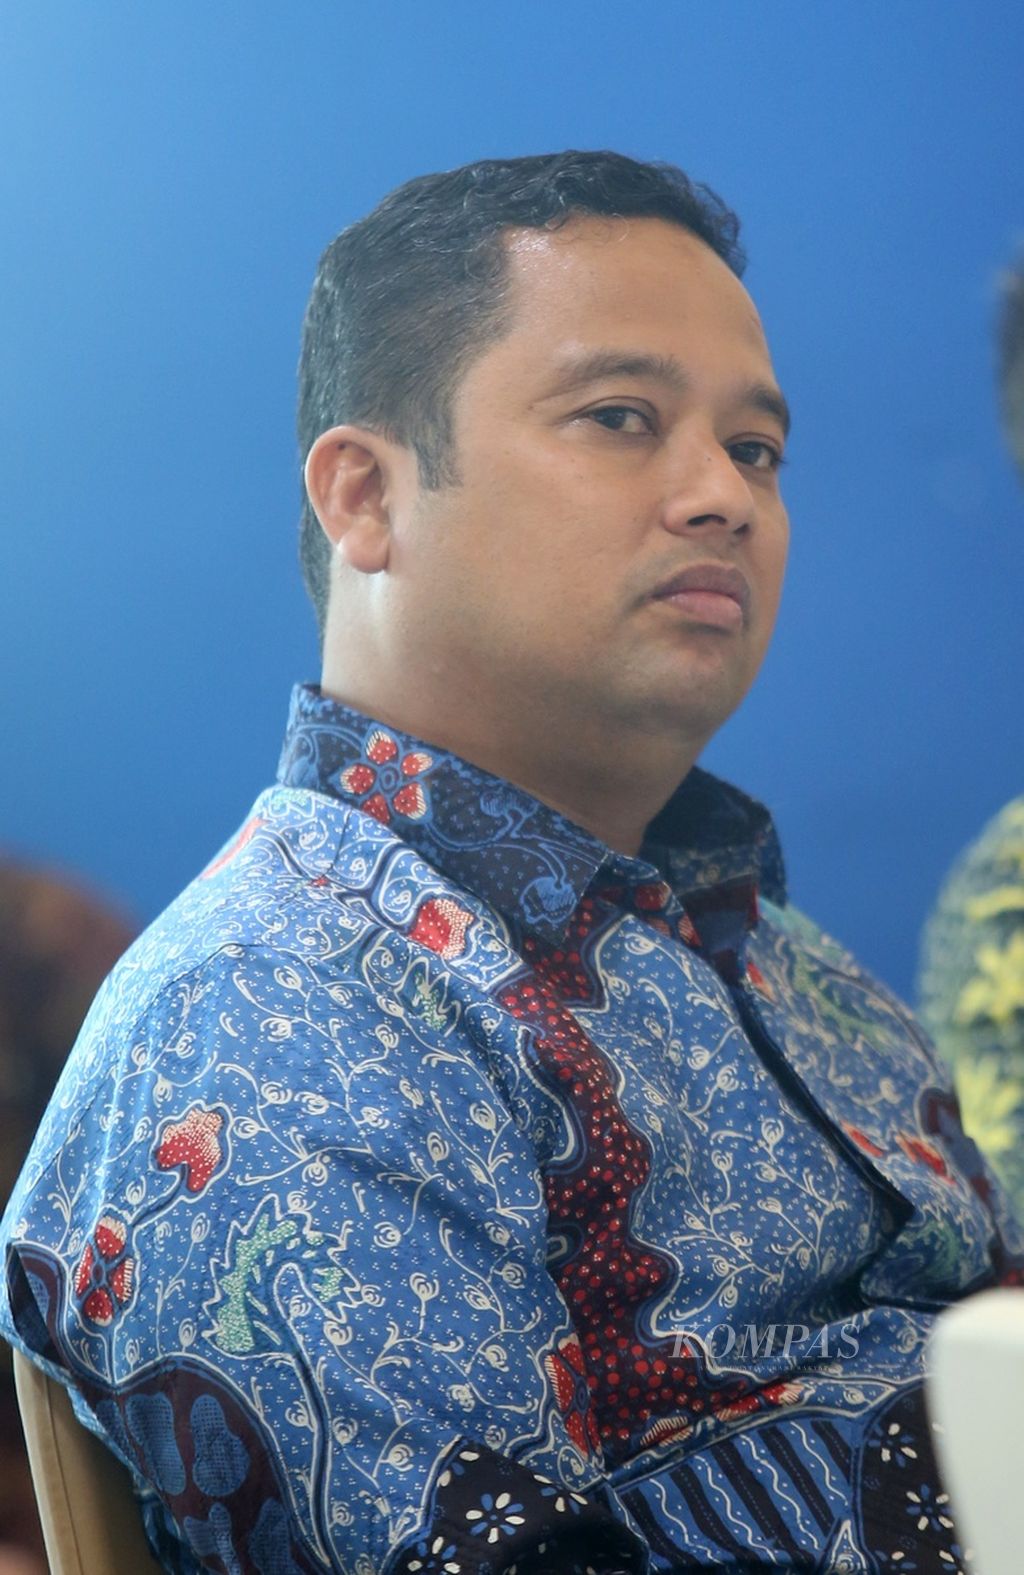 Wali Kota Tangerang Arief R Wismansyah 